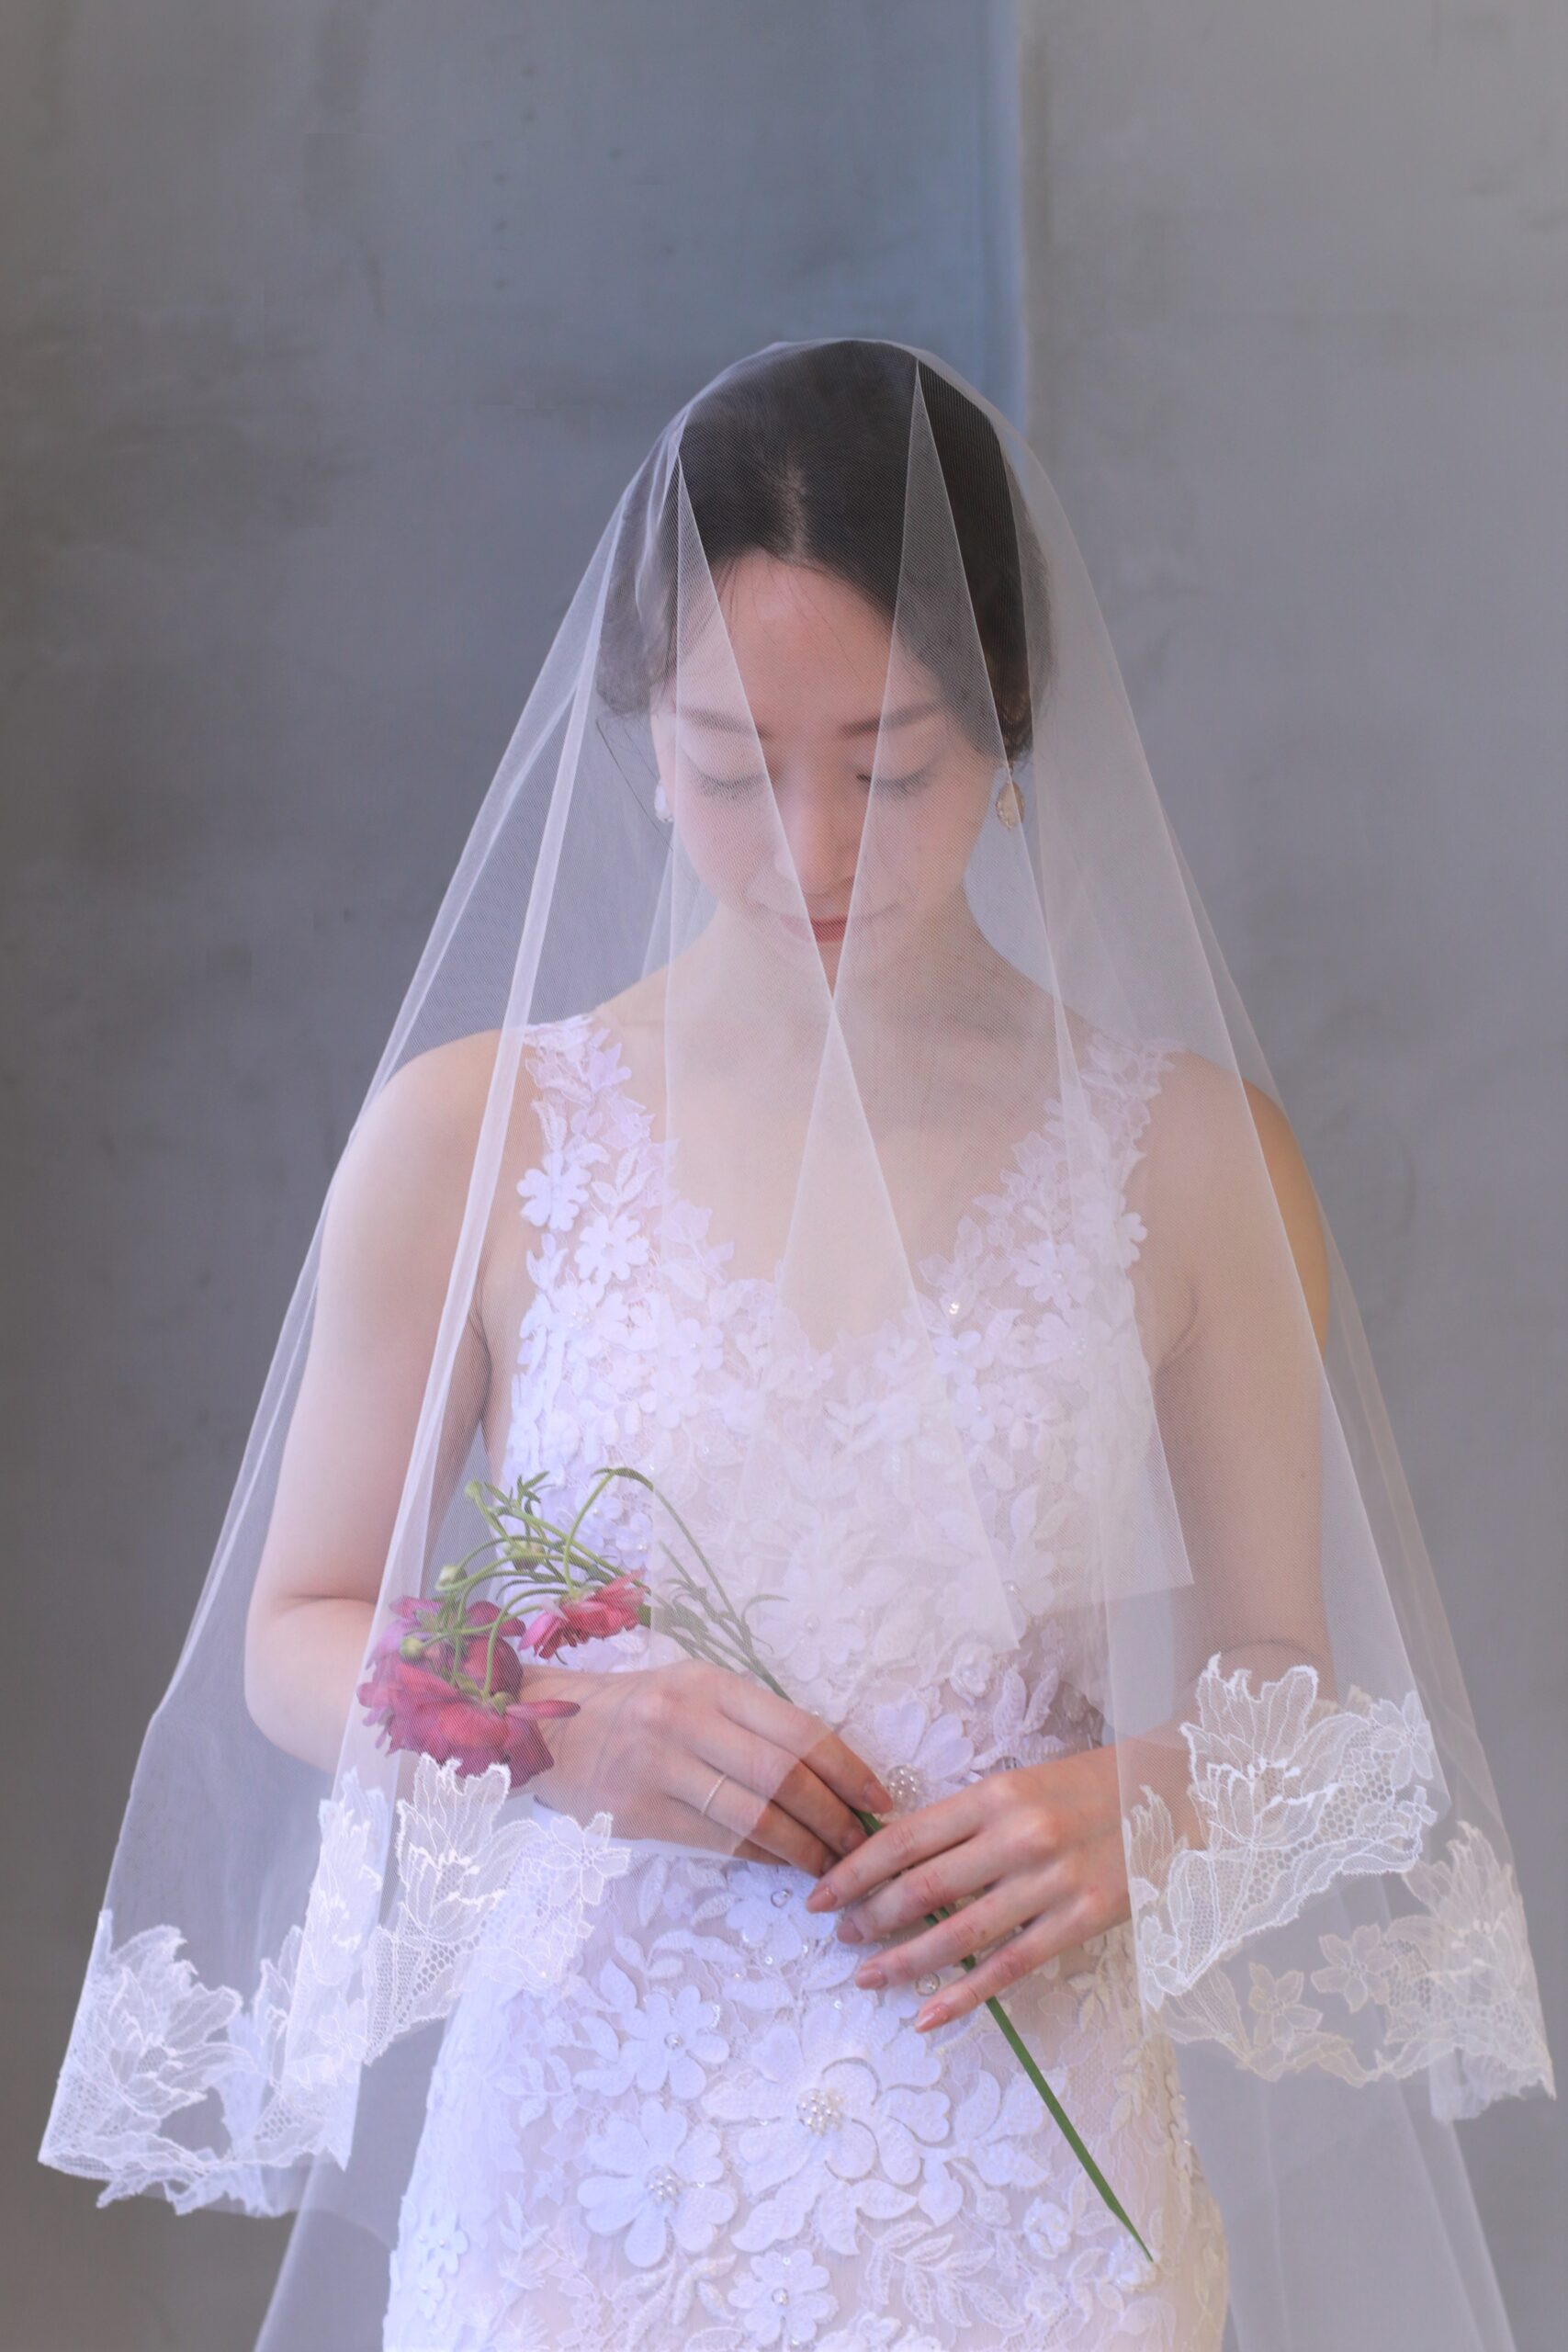 トリートメゾンのレースベールは花嫁に透明感をプラスするアイテムです。ベールを纏った花嫁はご家族の愛に包まれてより一層美しく輝きます